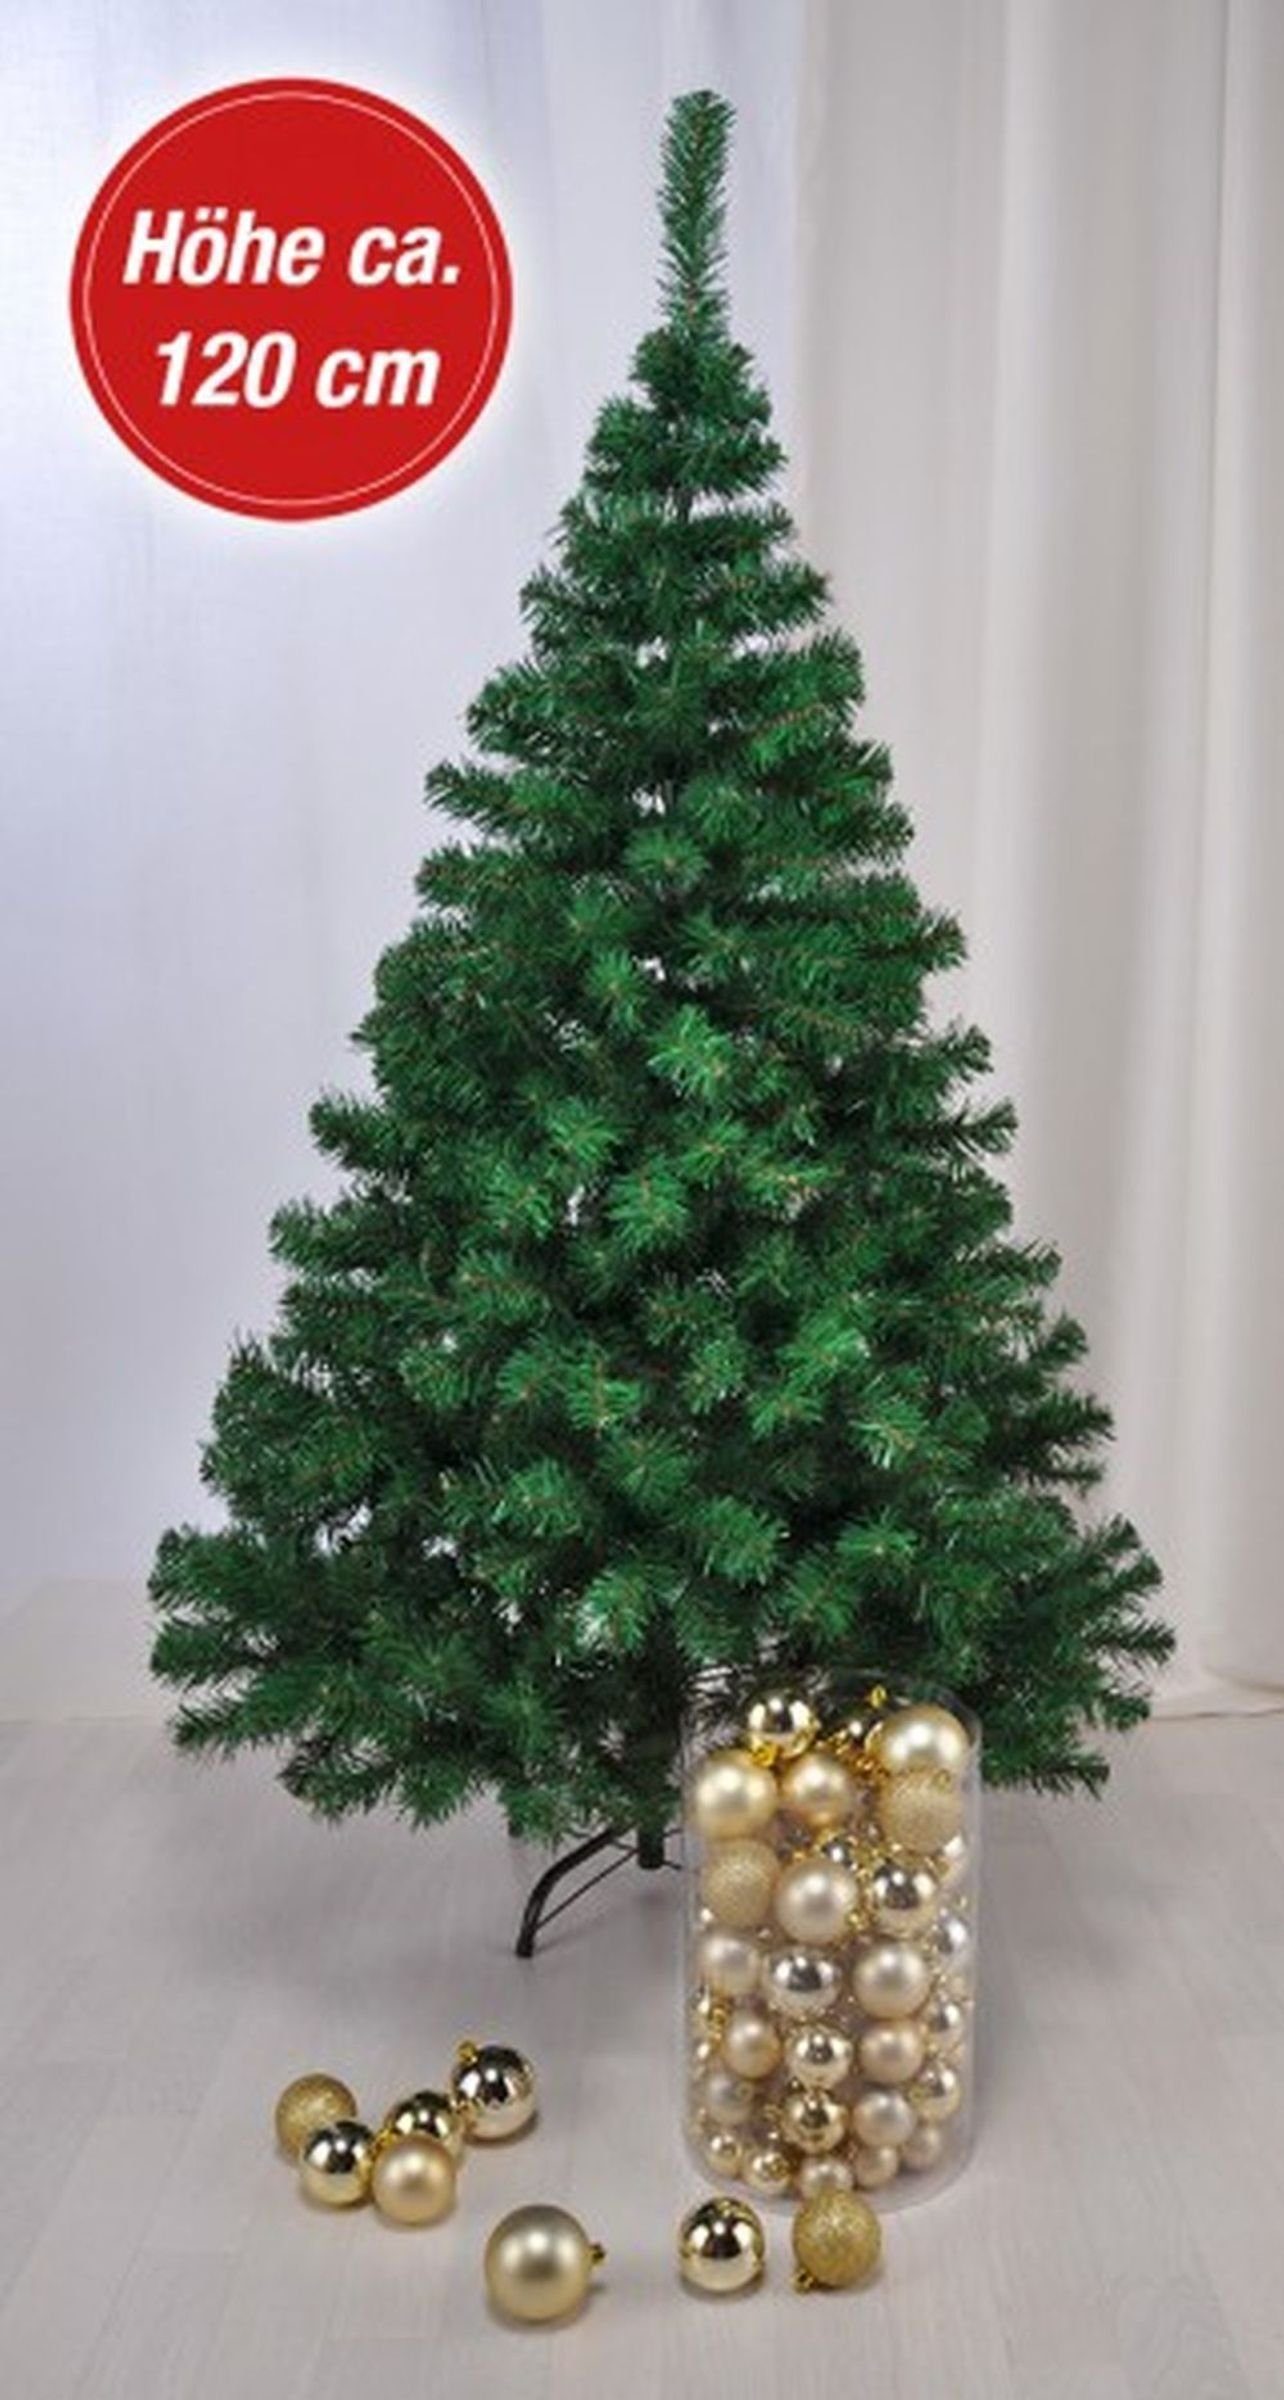 Weihnachtsbaum Künstlicher Weihnachtsbaum Gravidus Tannenbaum Kunststoff 1,2m Künstlicher